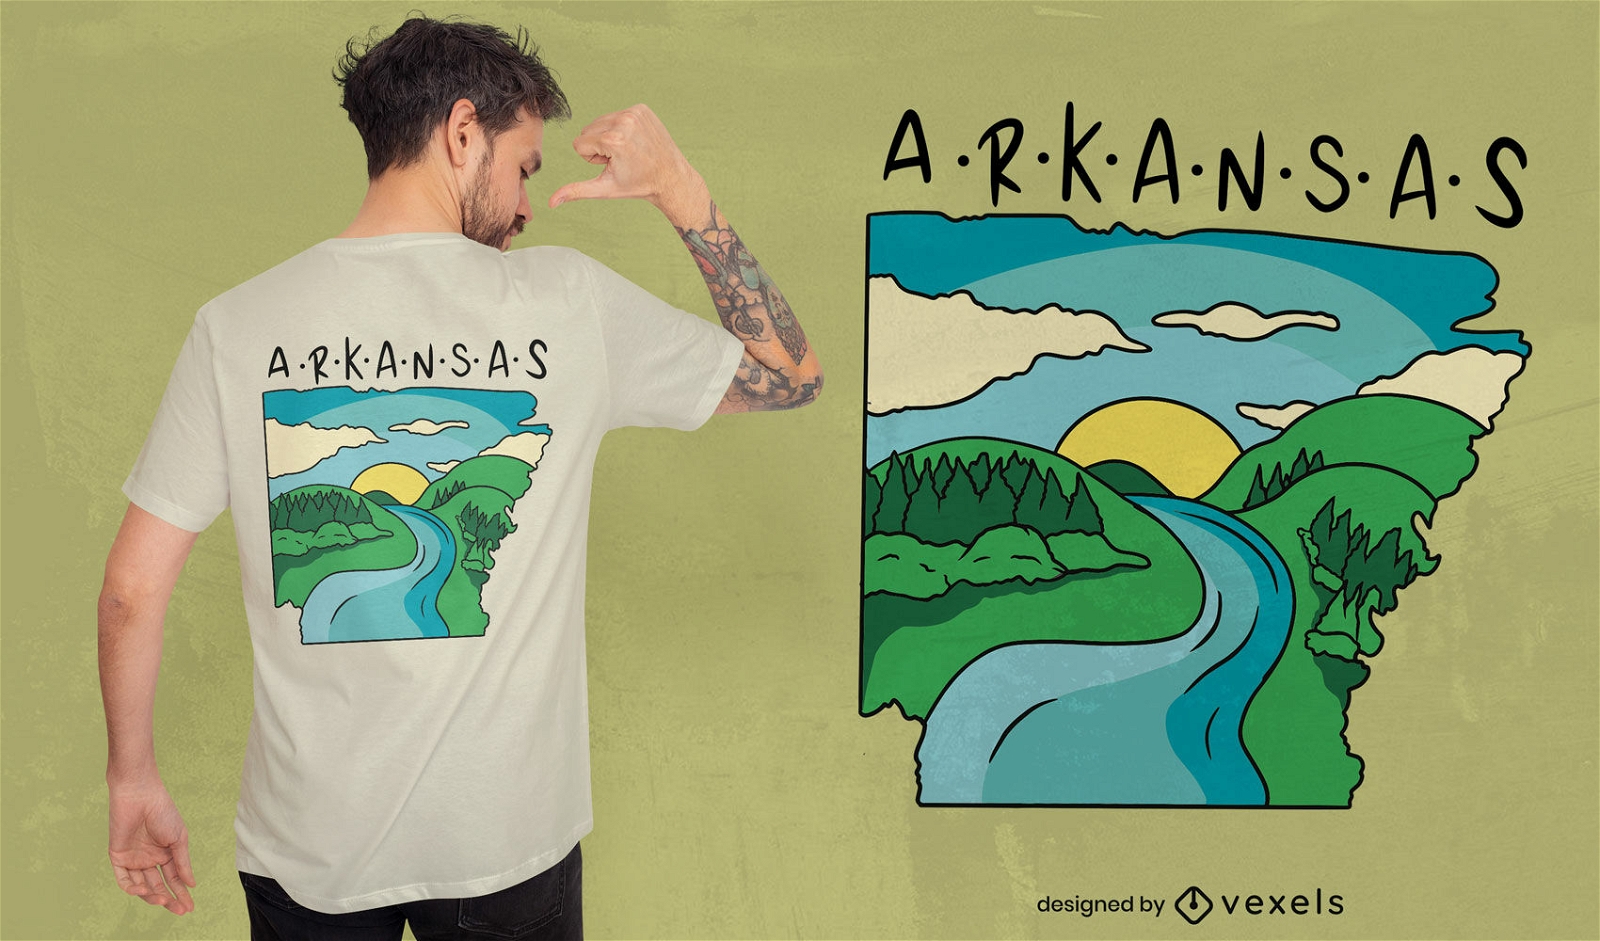 Arkansas nature landscape t-shirt design